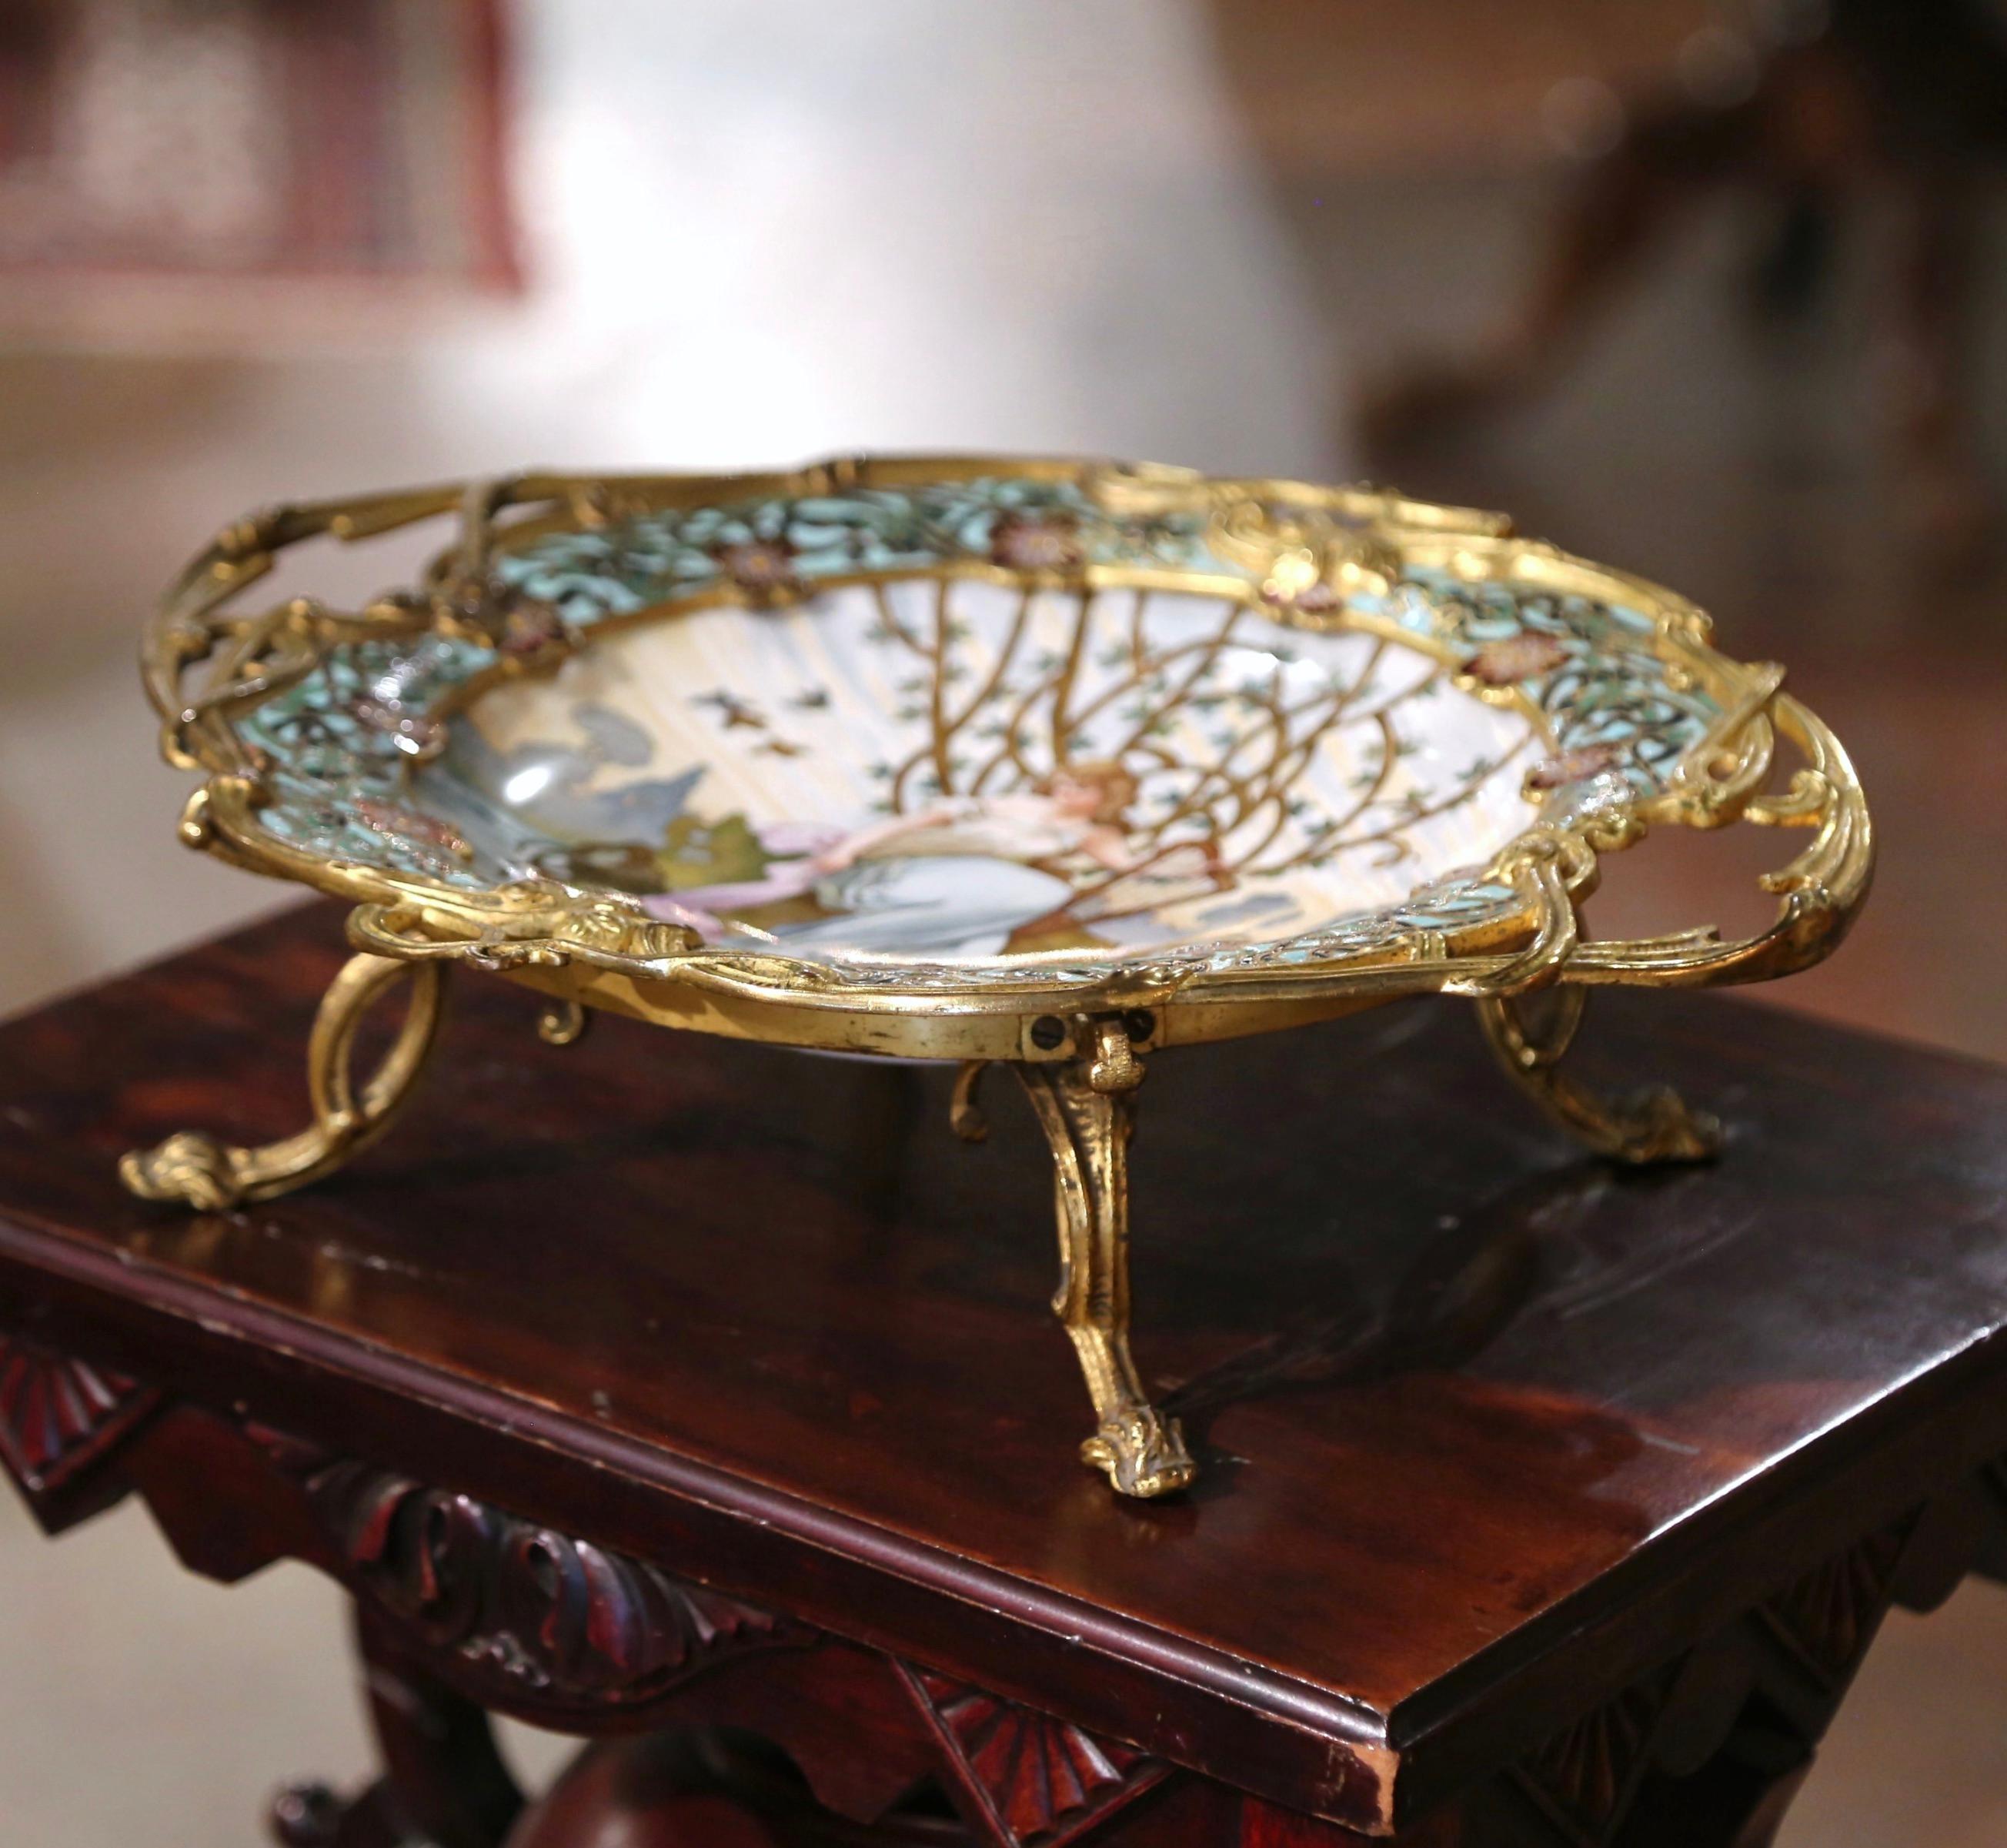 Dekorieren Sie einen Esstisch oder eine Konsole mit diesem eleganten antiken Mittelstück. Das farbenfrohe Tablett wurde um 1890 in Frankreich hergestellt und ist mit Tisserand signiert. Es steht auf kleinen, geschwungenen Füßen über einer ovalen